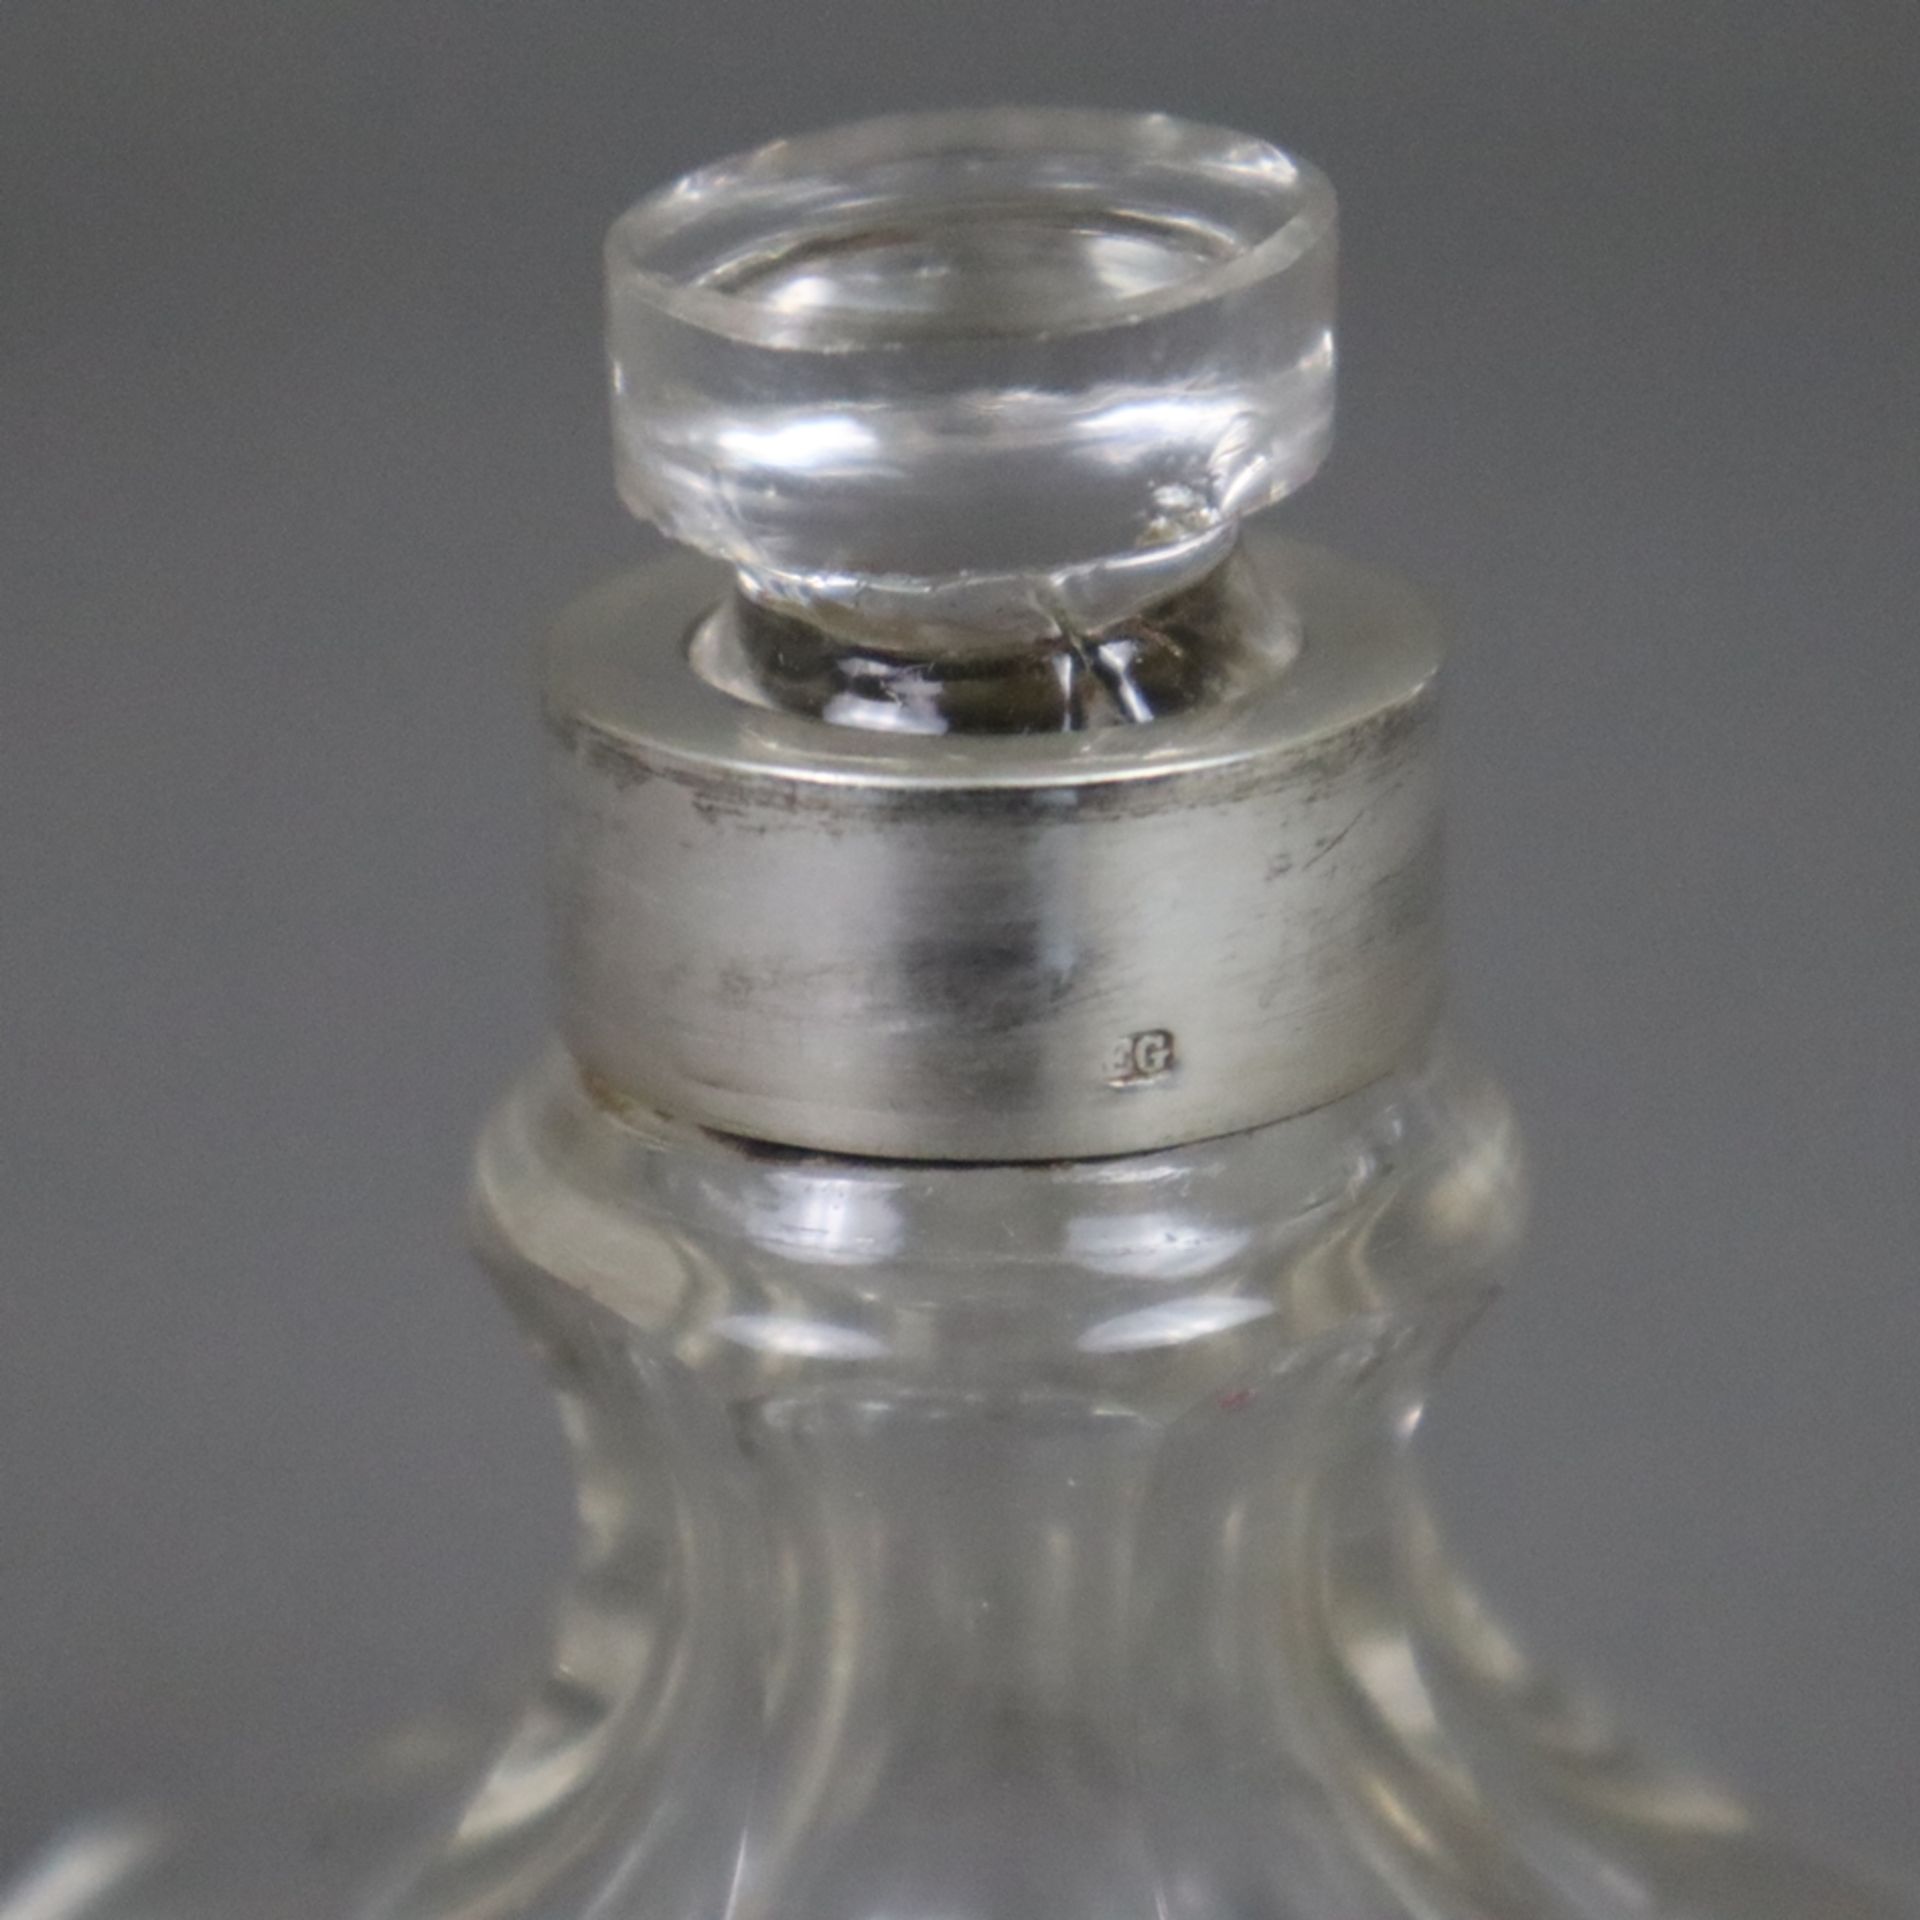 Drei Glasflakons mit Silbermontur - 2x Parfumflakons, wohl Österreich, farbloses Glas, achtfach fac - Bild 7 aus 10